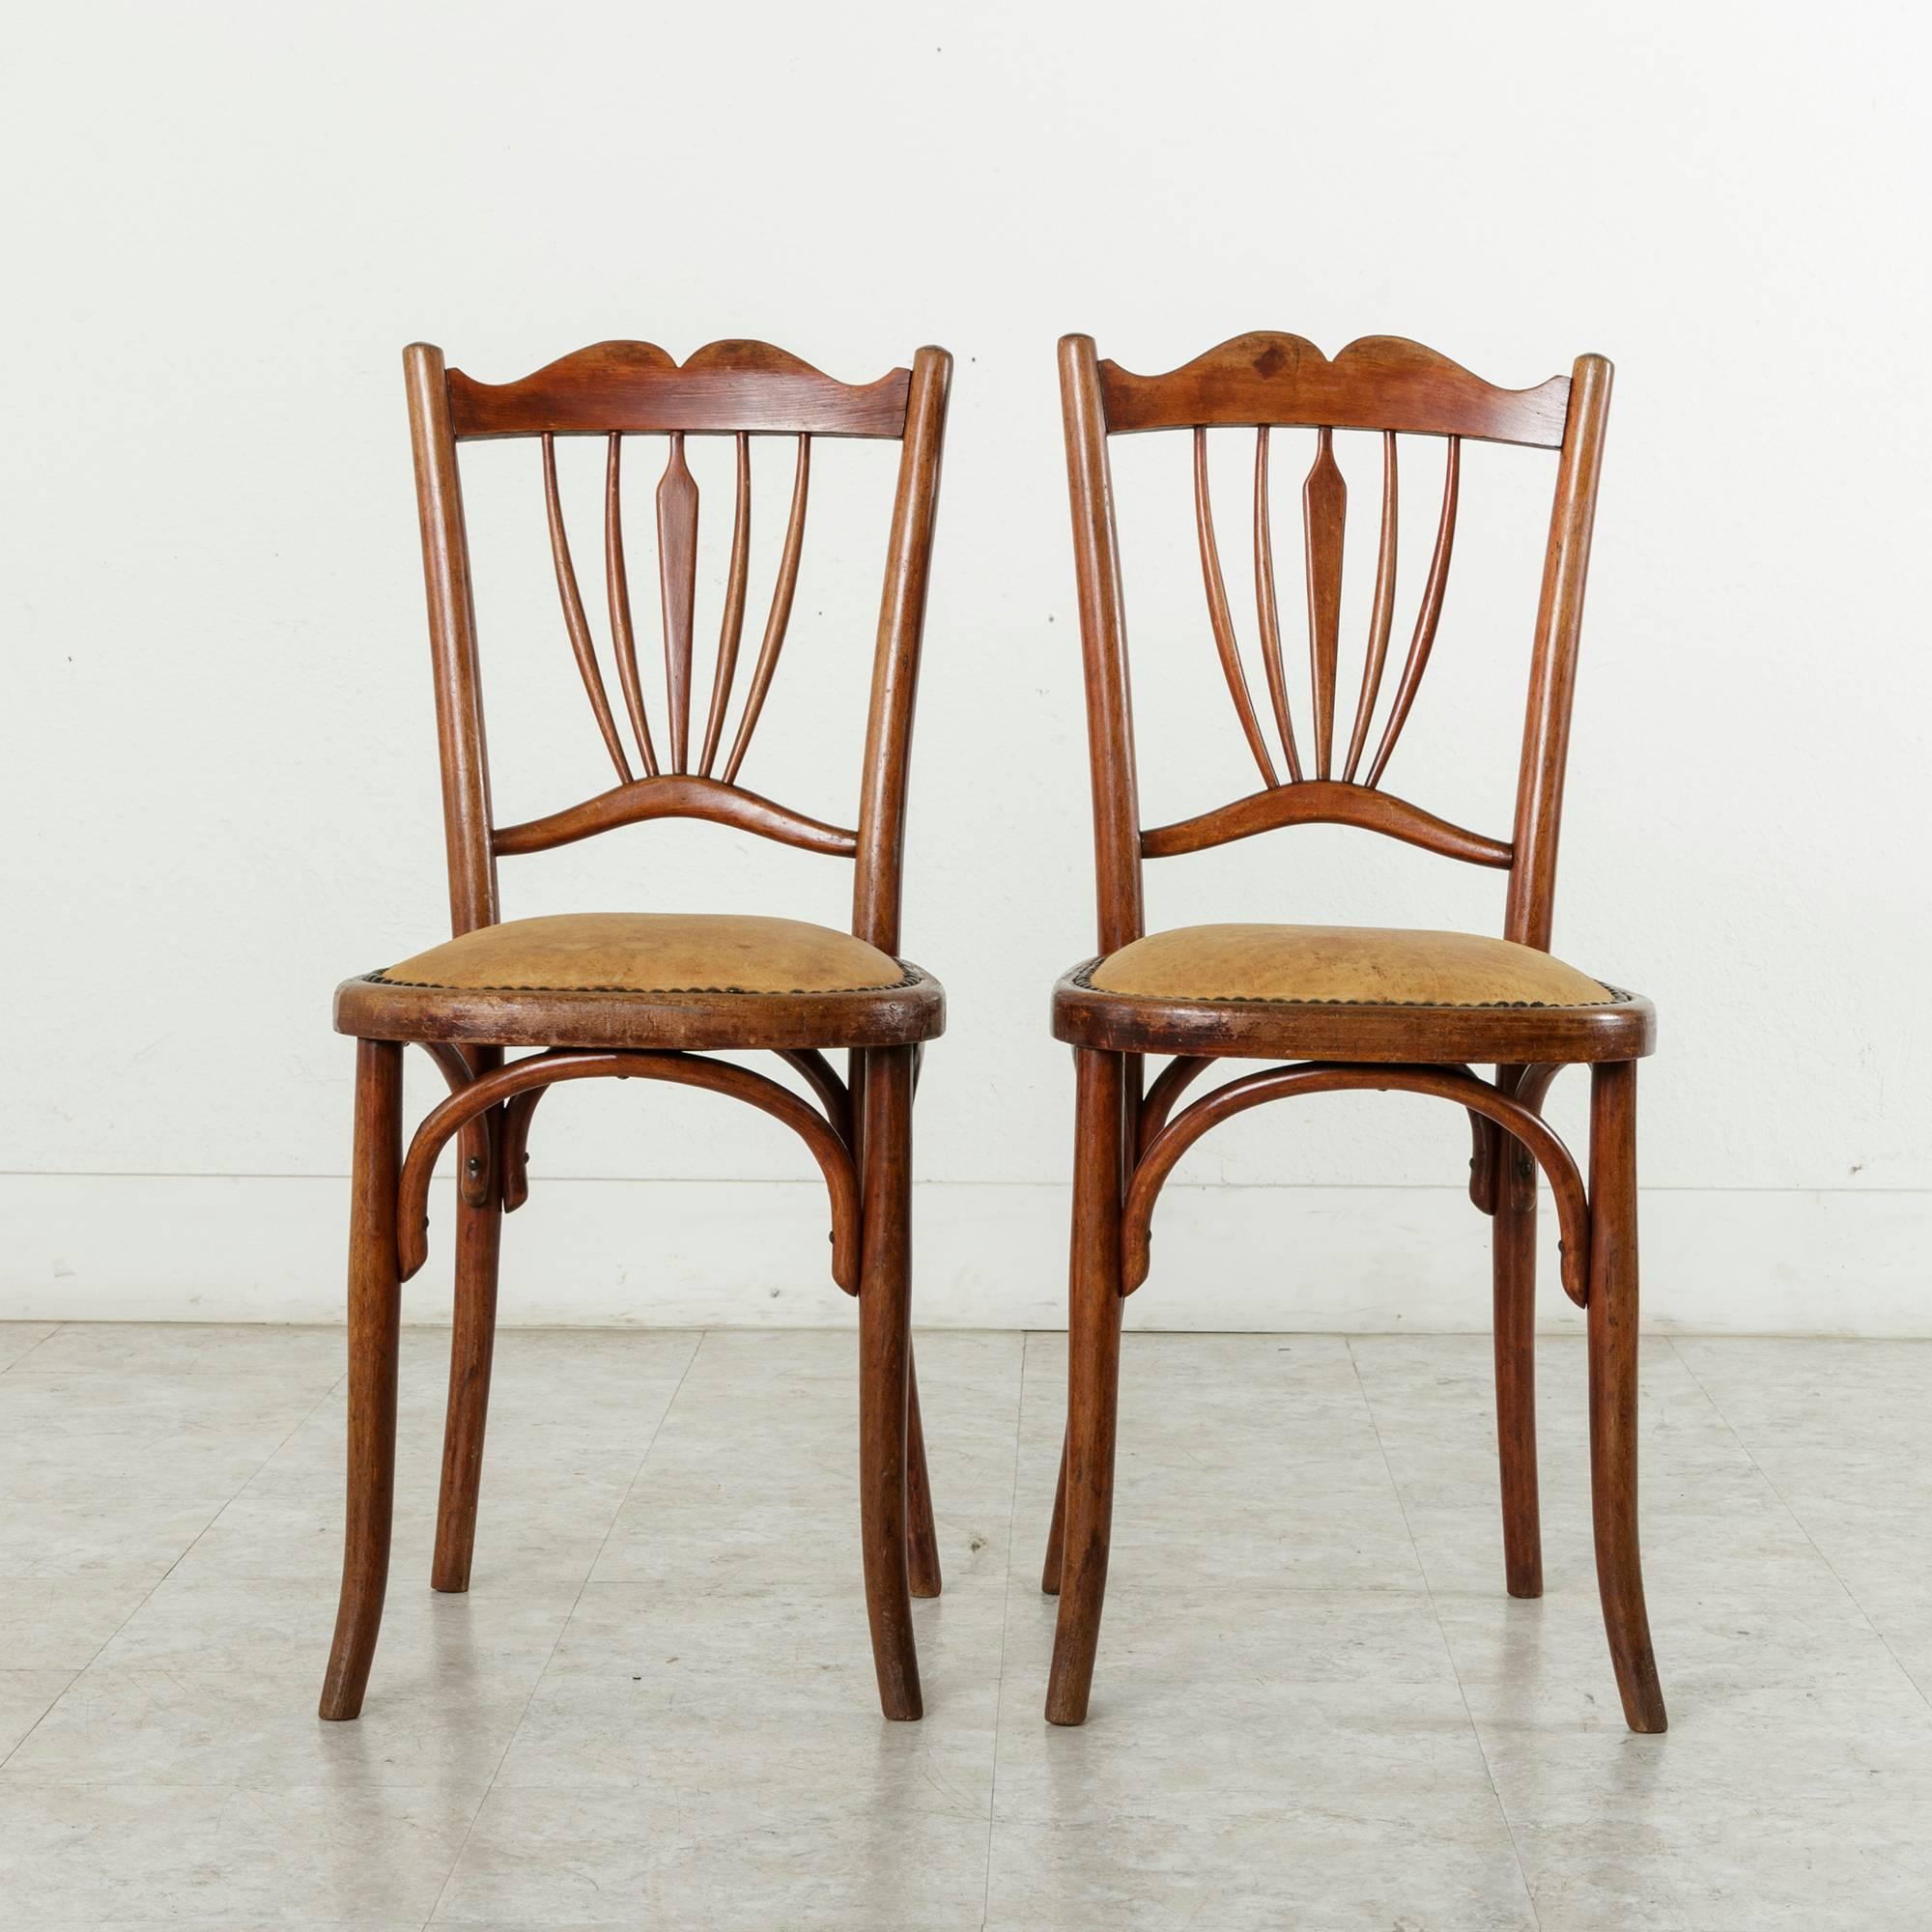 Dieses Paar Art-Déco-Stühle im Stil von Thonet besteht aus einem Bugholzgestell mit originalem, rot getöntem Finish. Die gepolsterten cognacfarbenen Ledersitze sind mit Nagelkopfverzierungen versehen. Ursprünglich wurde es in einem französischen